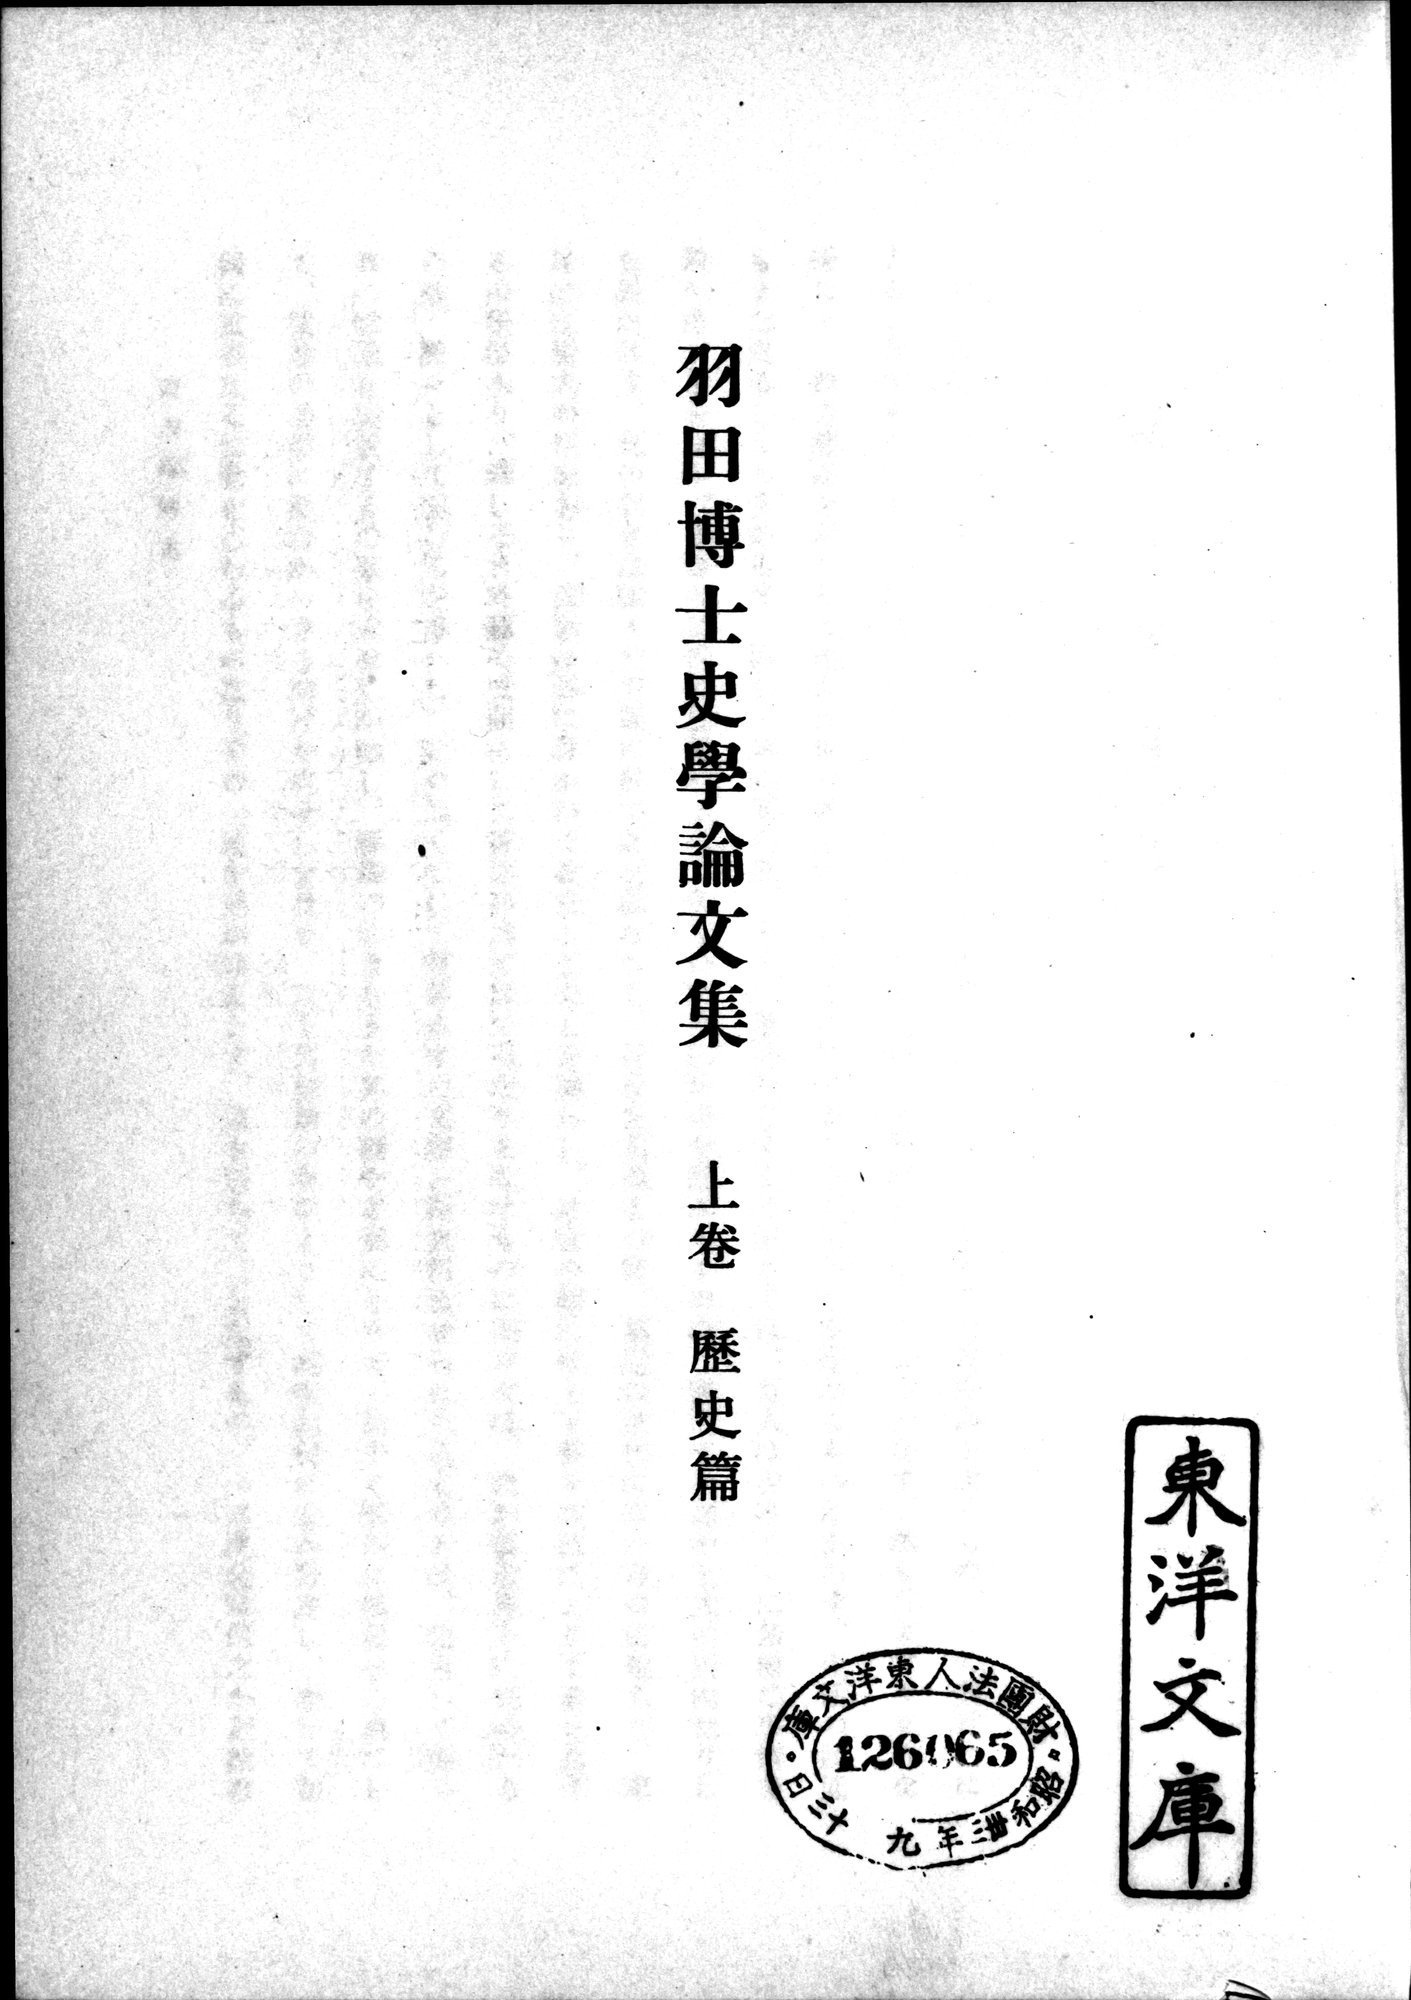 羽田博士史学論文集 : vol.1 / 37 ページ（白黒高解像度画像）